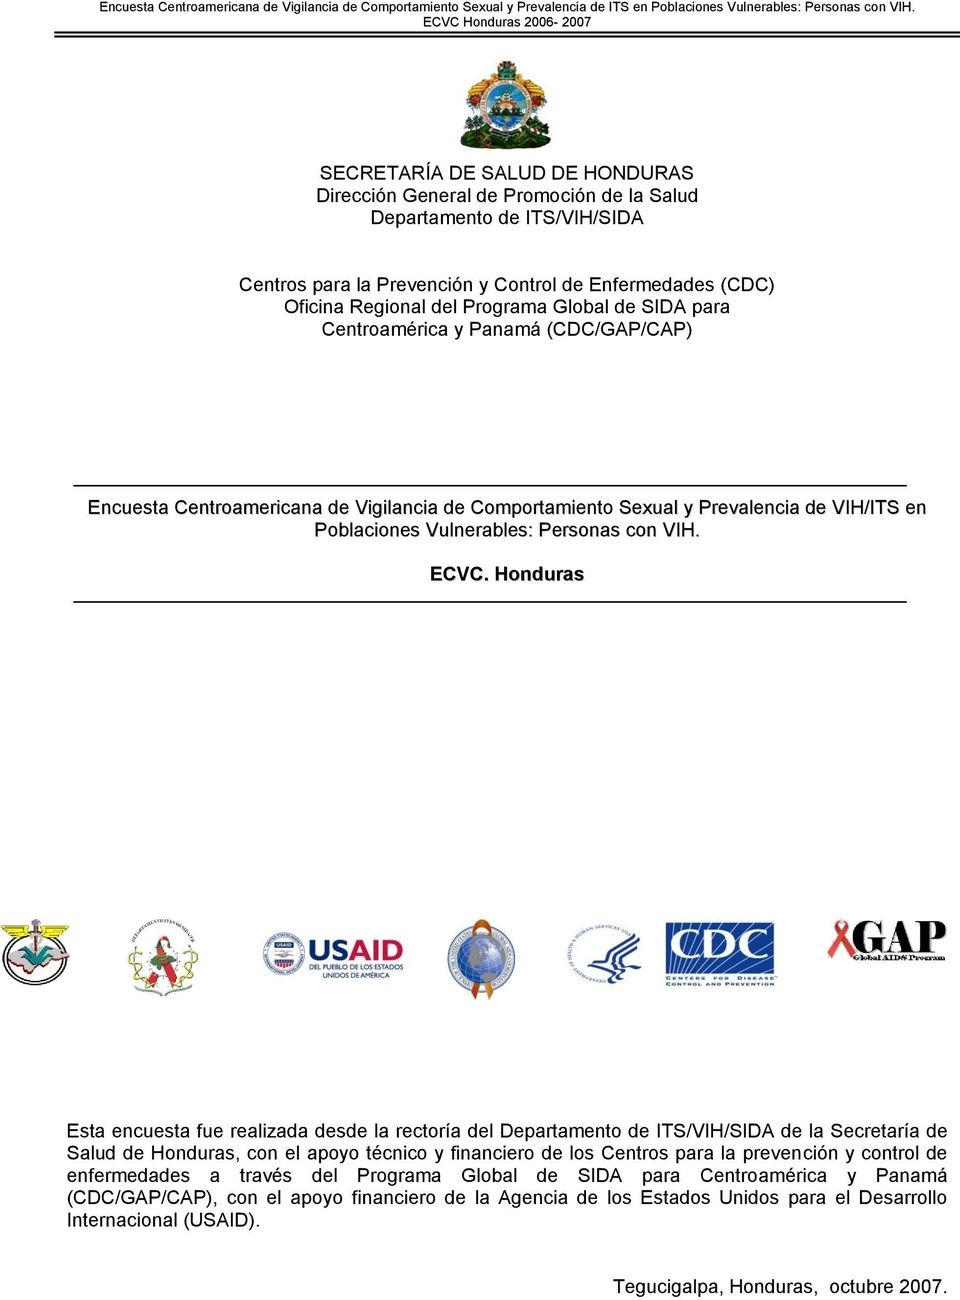 Honduras Esta encuesta fue realizada desde la rectoría del Departamento de ITS/VIH/SIDA de la Secretaría de Salud de Honduras, con el apoyo técnico y financiero de los Centros para la prevención y